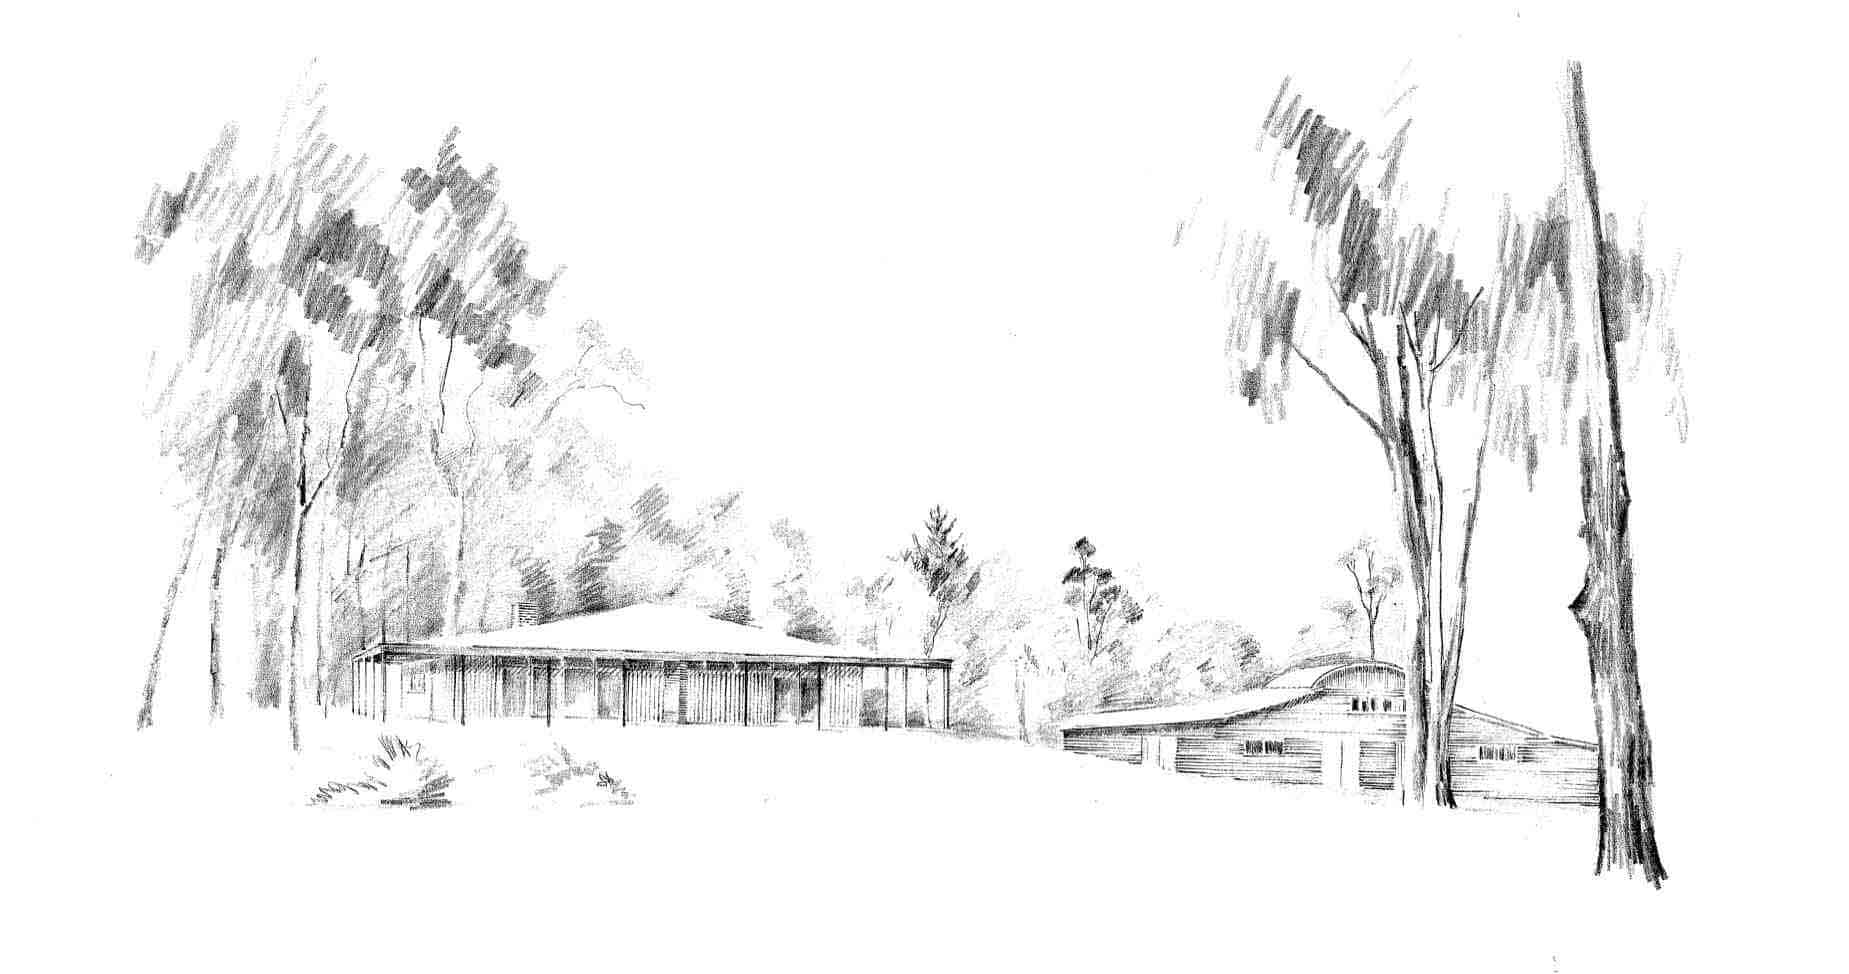 Richardson, 3: rendering buildings